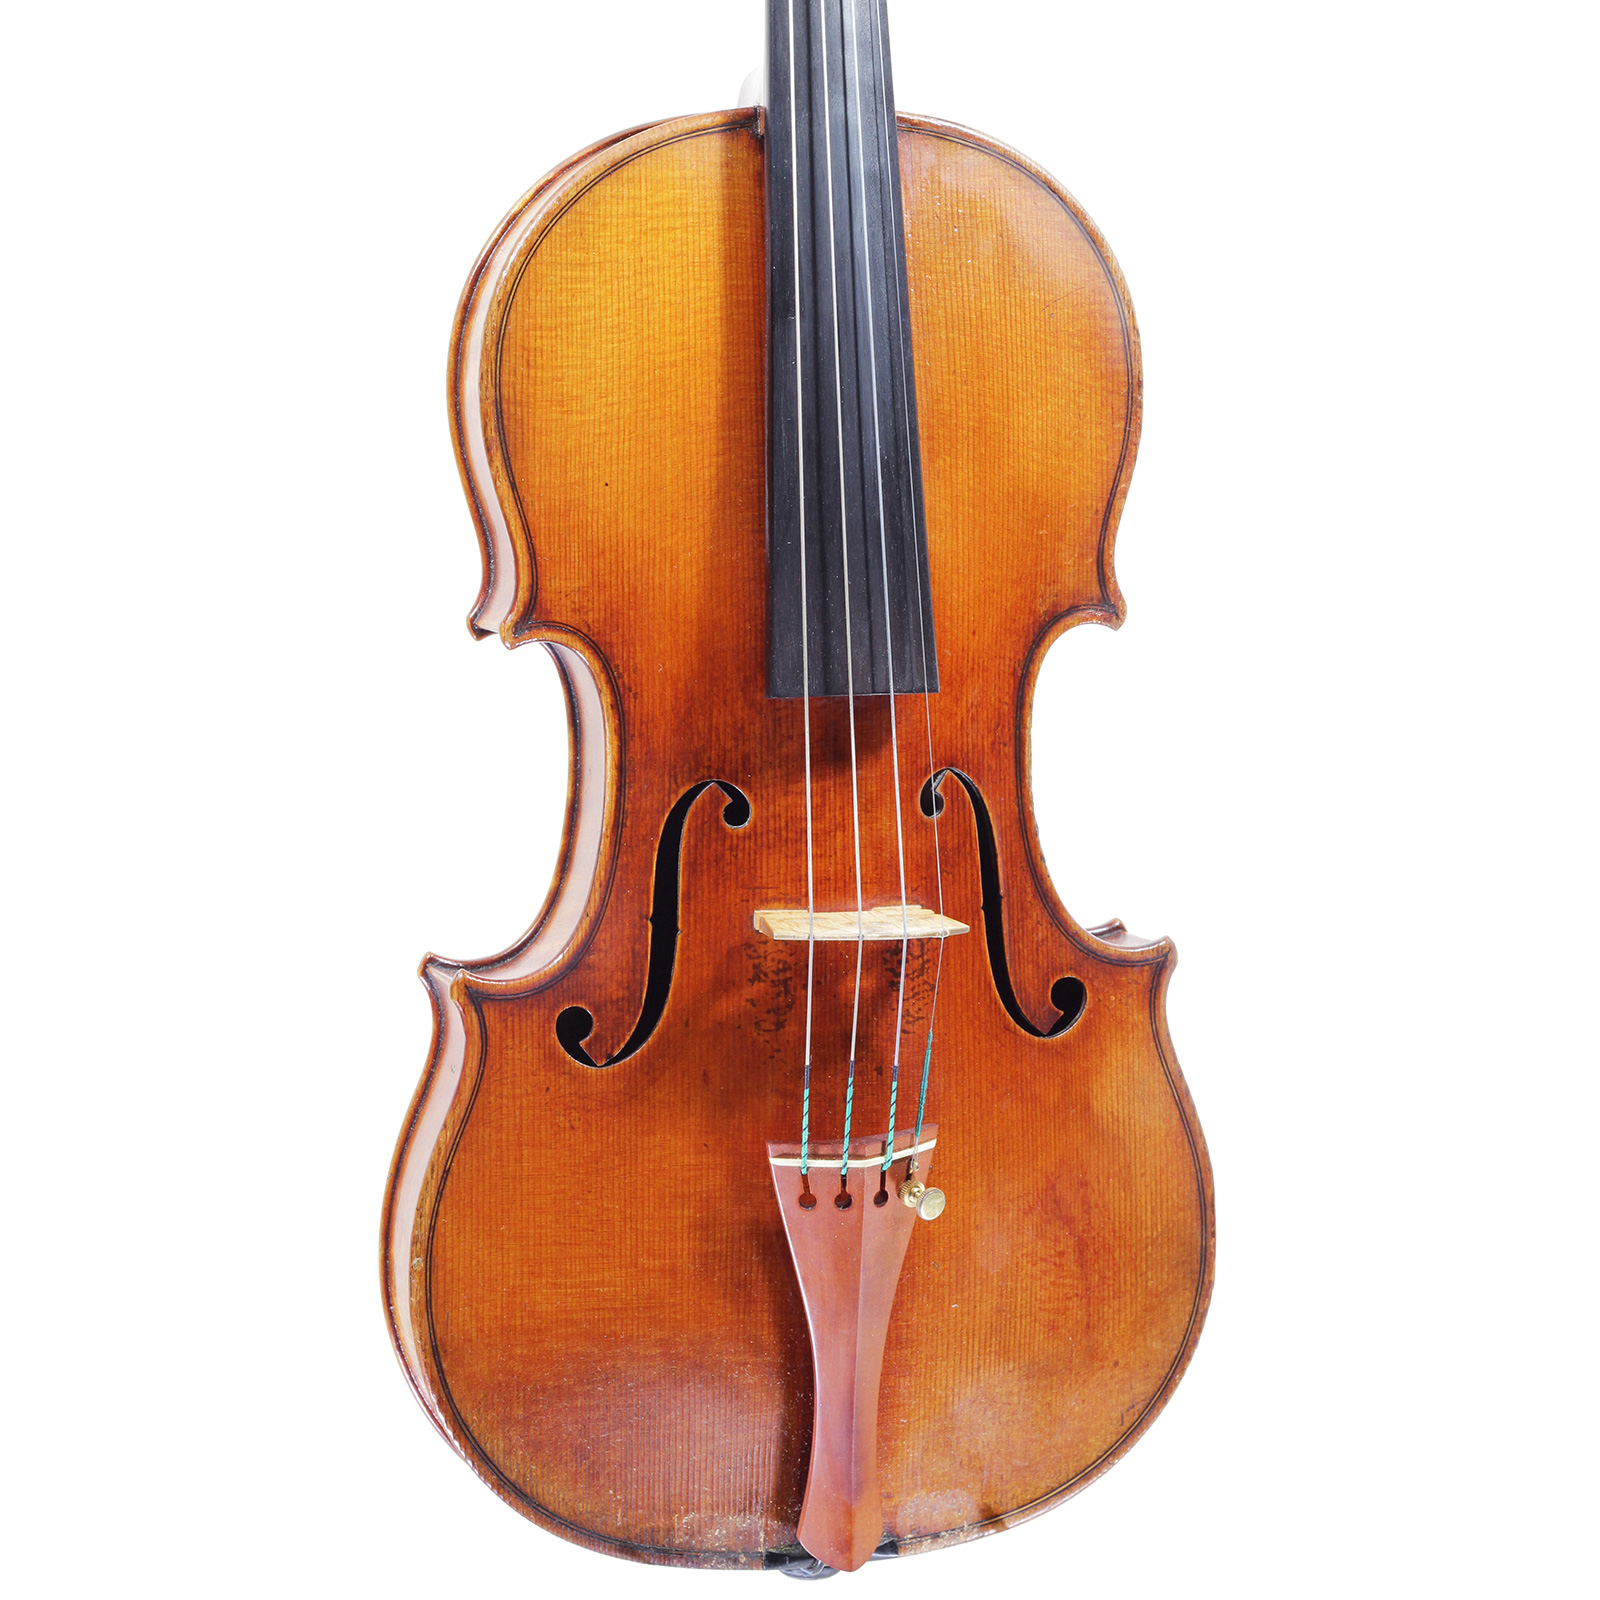 弦楽器専門店 ラルジュ ー販売、鑑定、修理、調整、買取ー バイオリン 